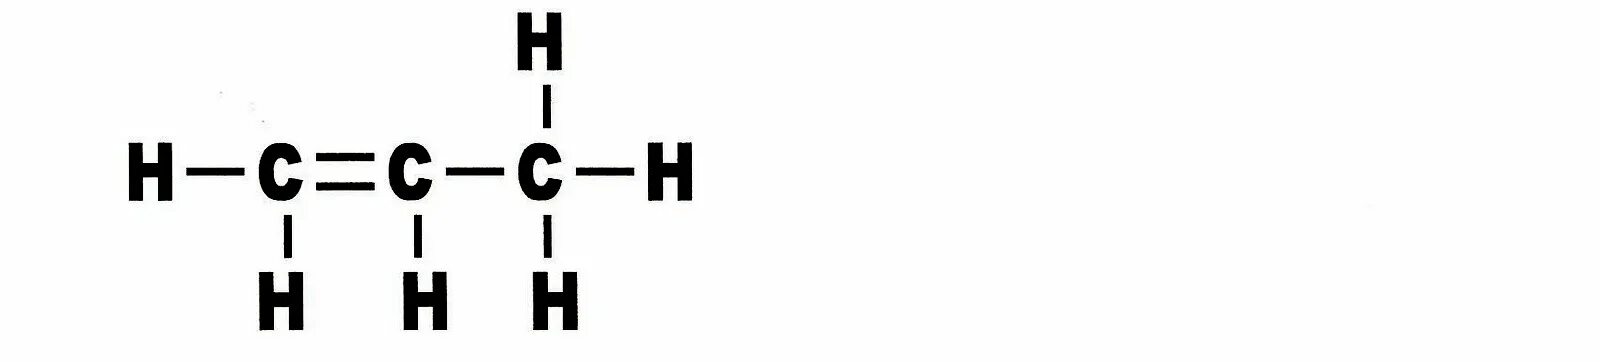 Cocl. C2h6 формула модель. C2h6 формула объемная модель. Nh2oh графическая формула. Cocl2 вид химической связи.